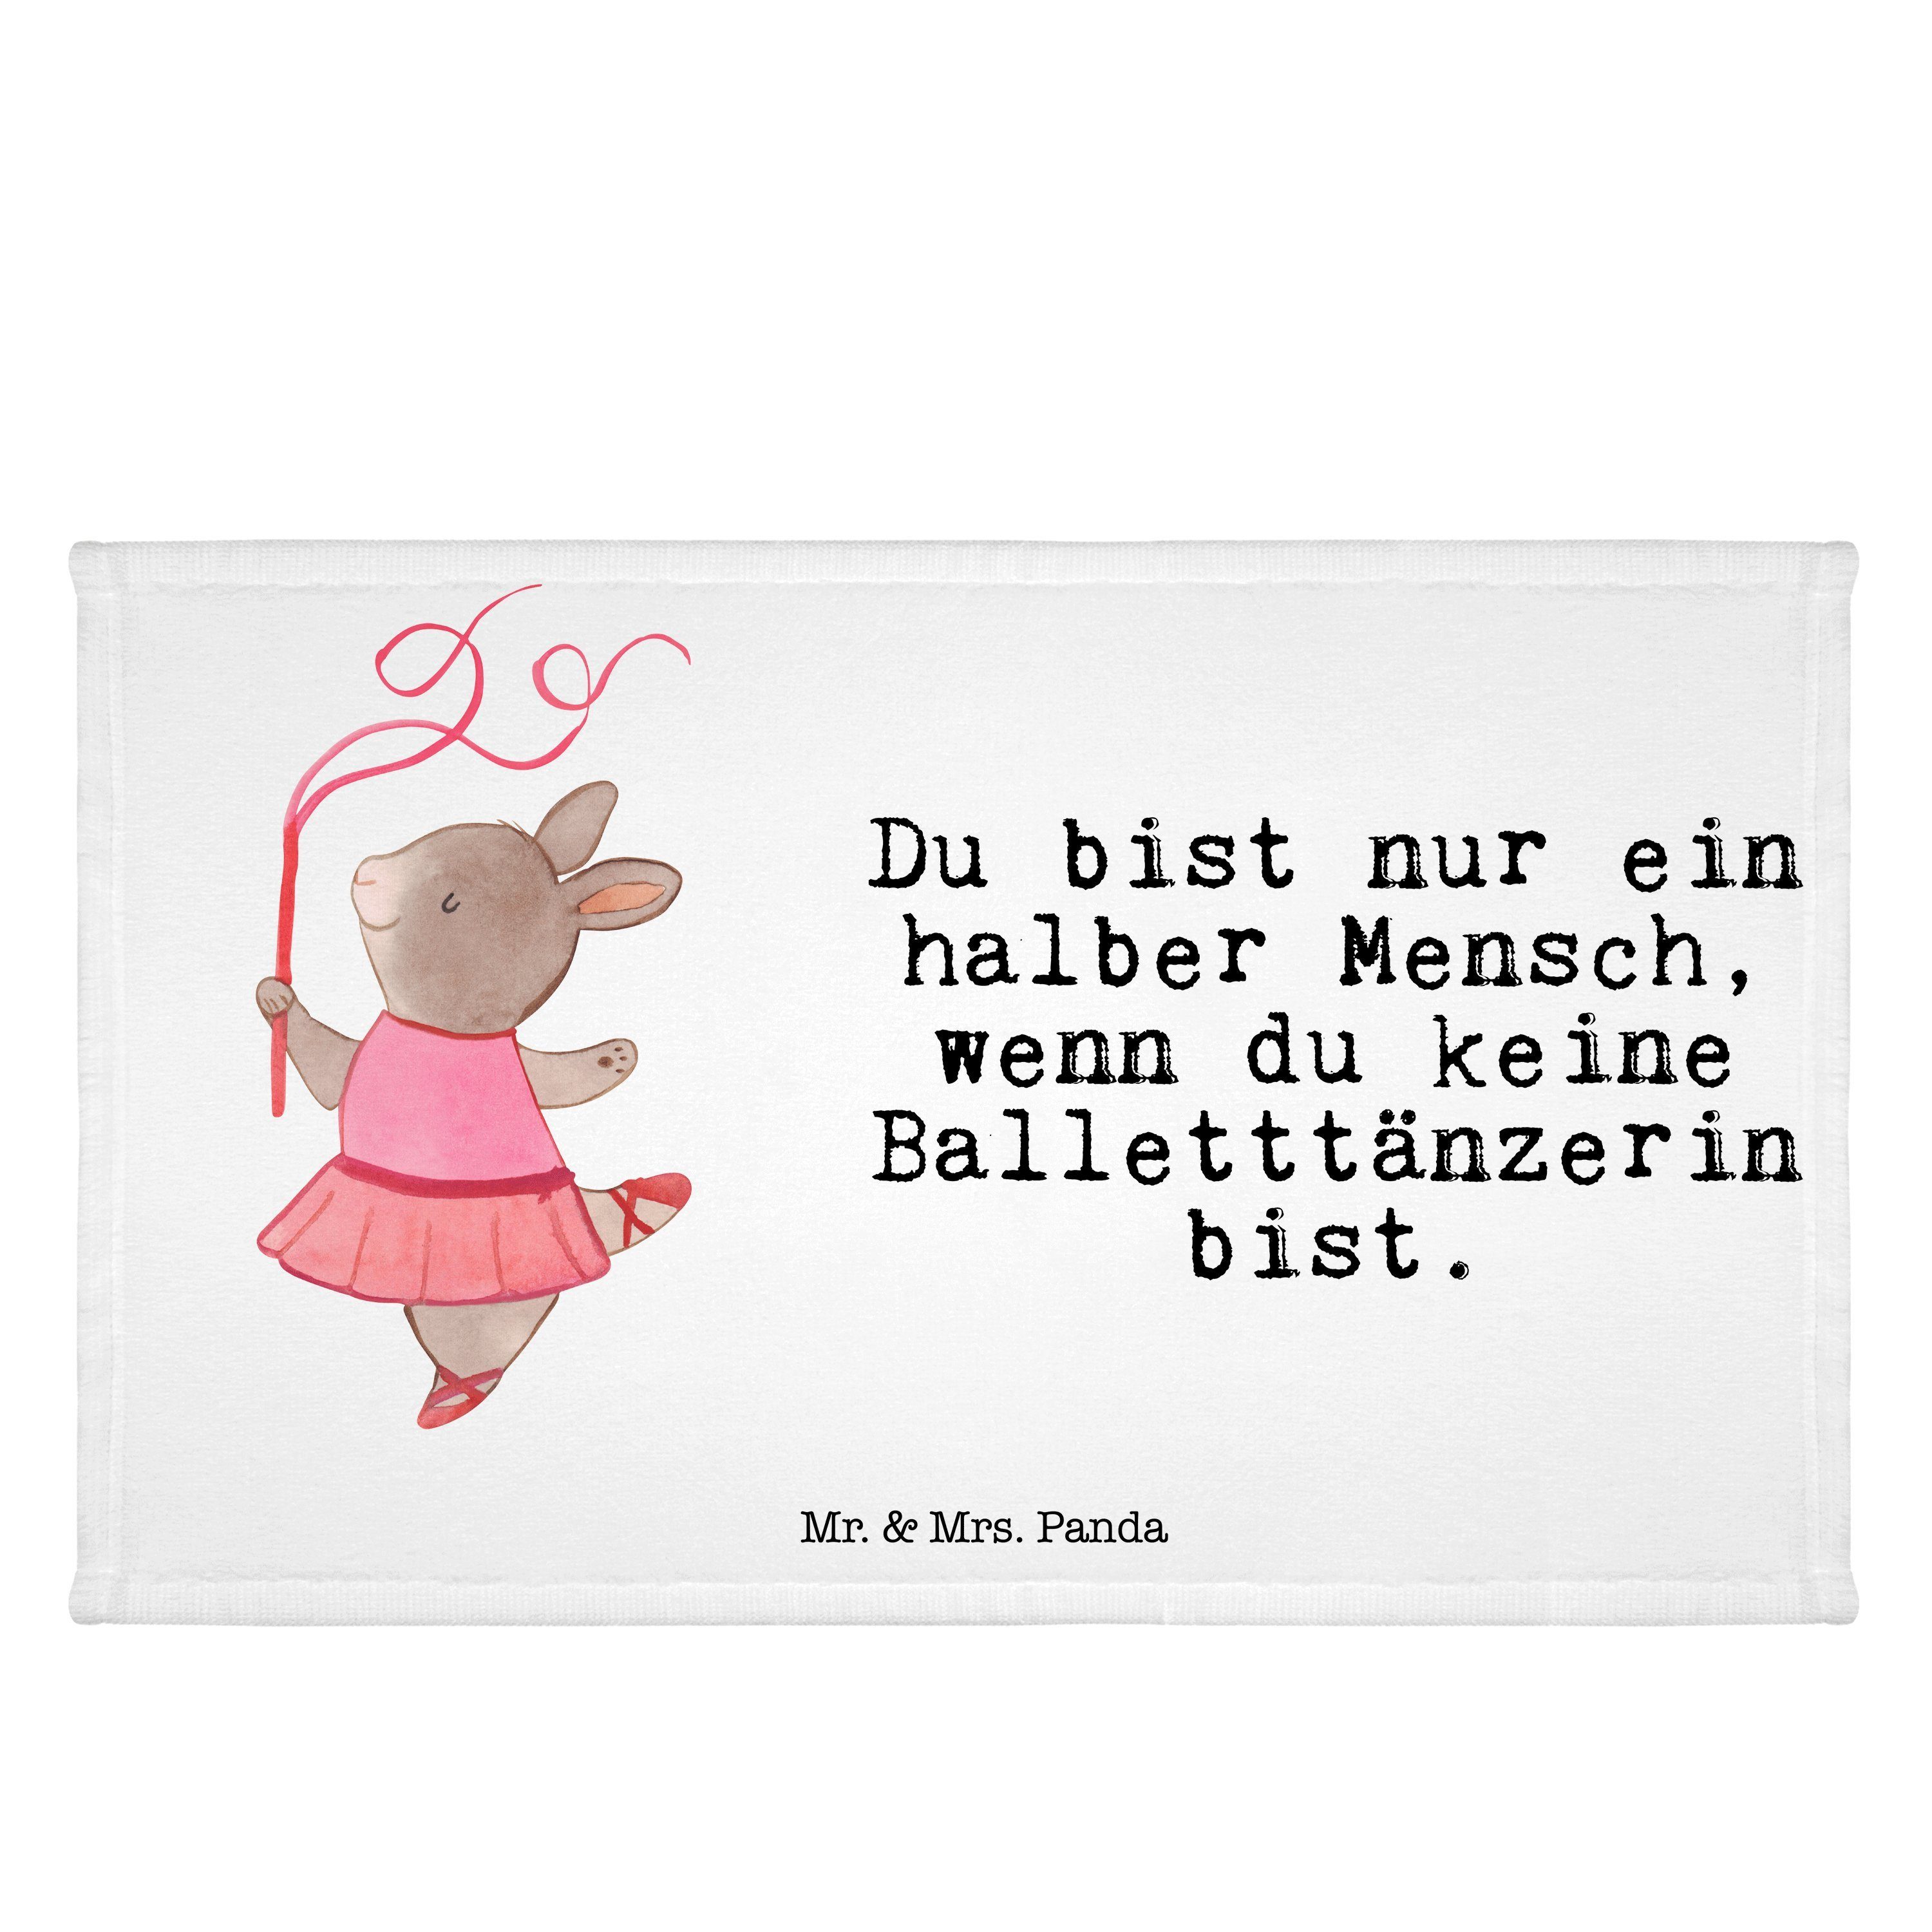 Mr. & Mrs. Panda Handtuch Balletttänzerin mit Herz - Weiß - Geschenk, Kinder Handtuch, Ballettu, (1-St)